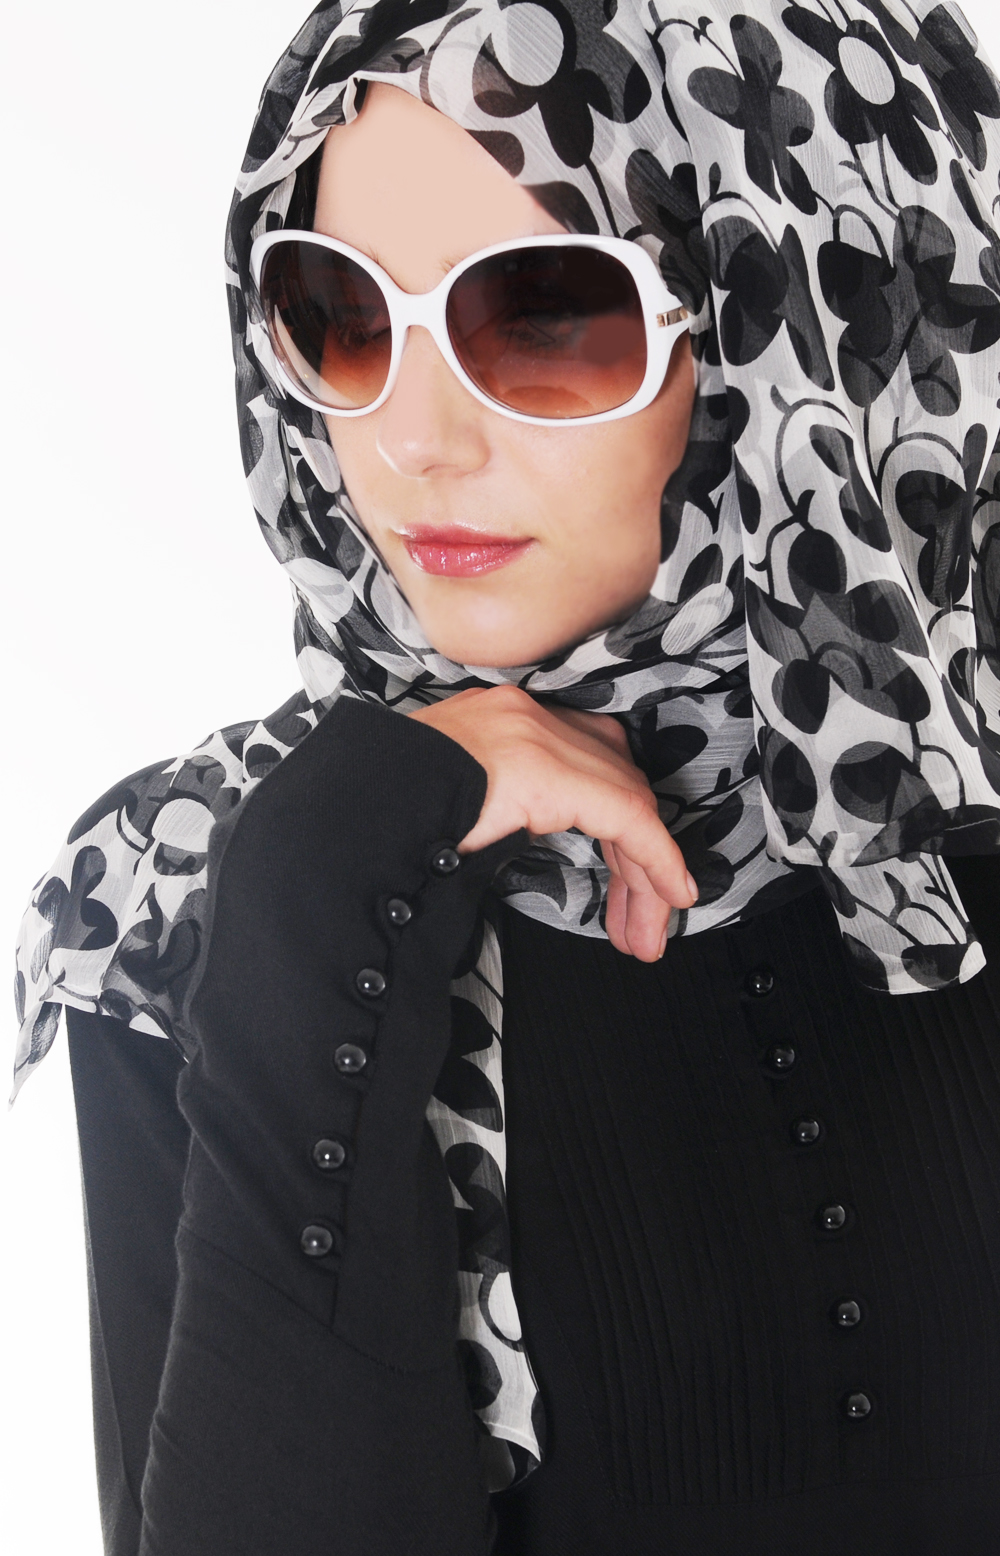 Х мусульманские. Арабская мода для женщин.